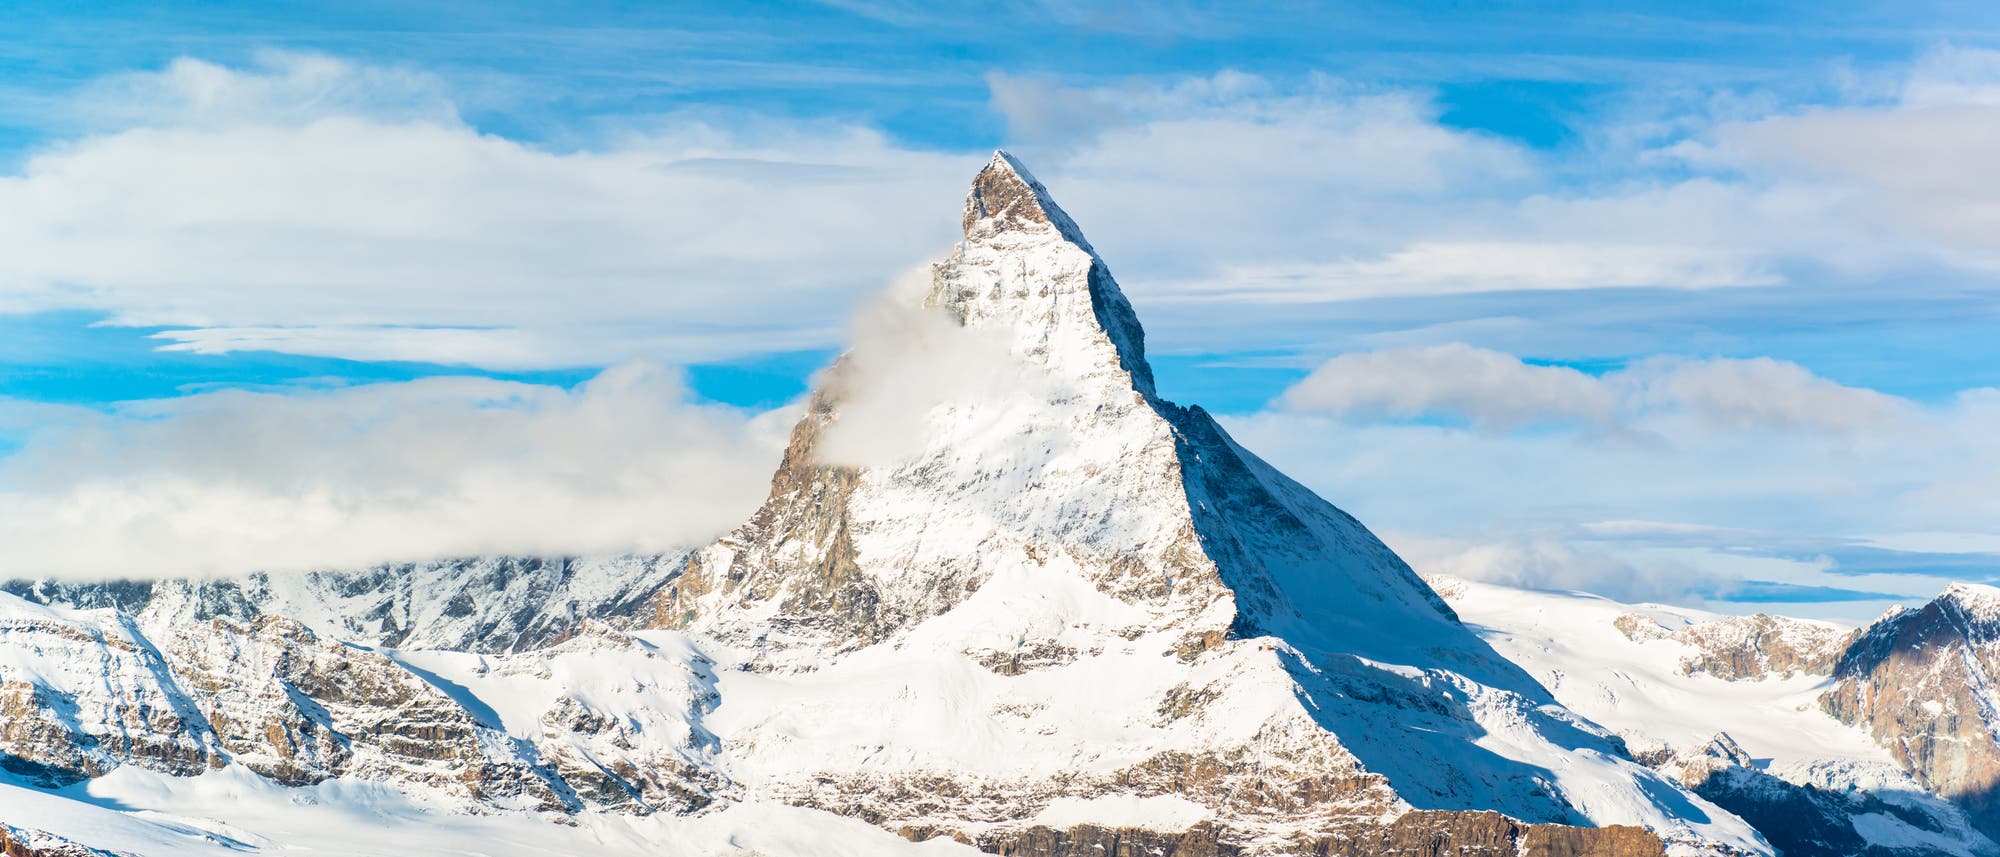 Das Matterhorn von der Schweiz aus gesehen. Direkt östlich des Berges lief eine wichtige Verbindungsroute über den Bergkamm.